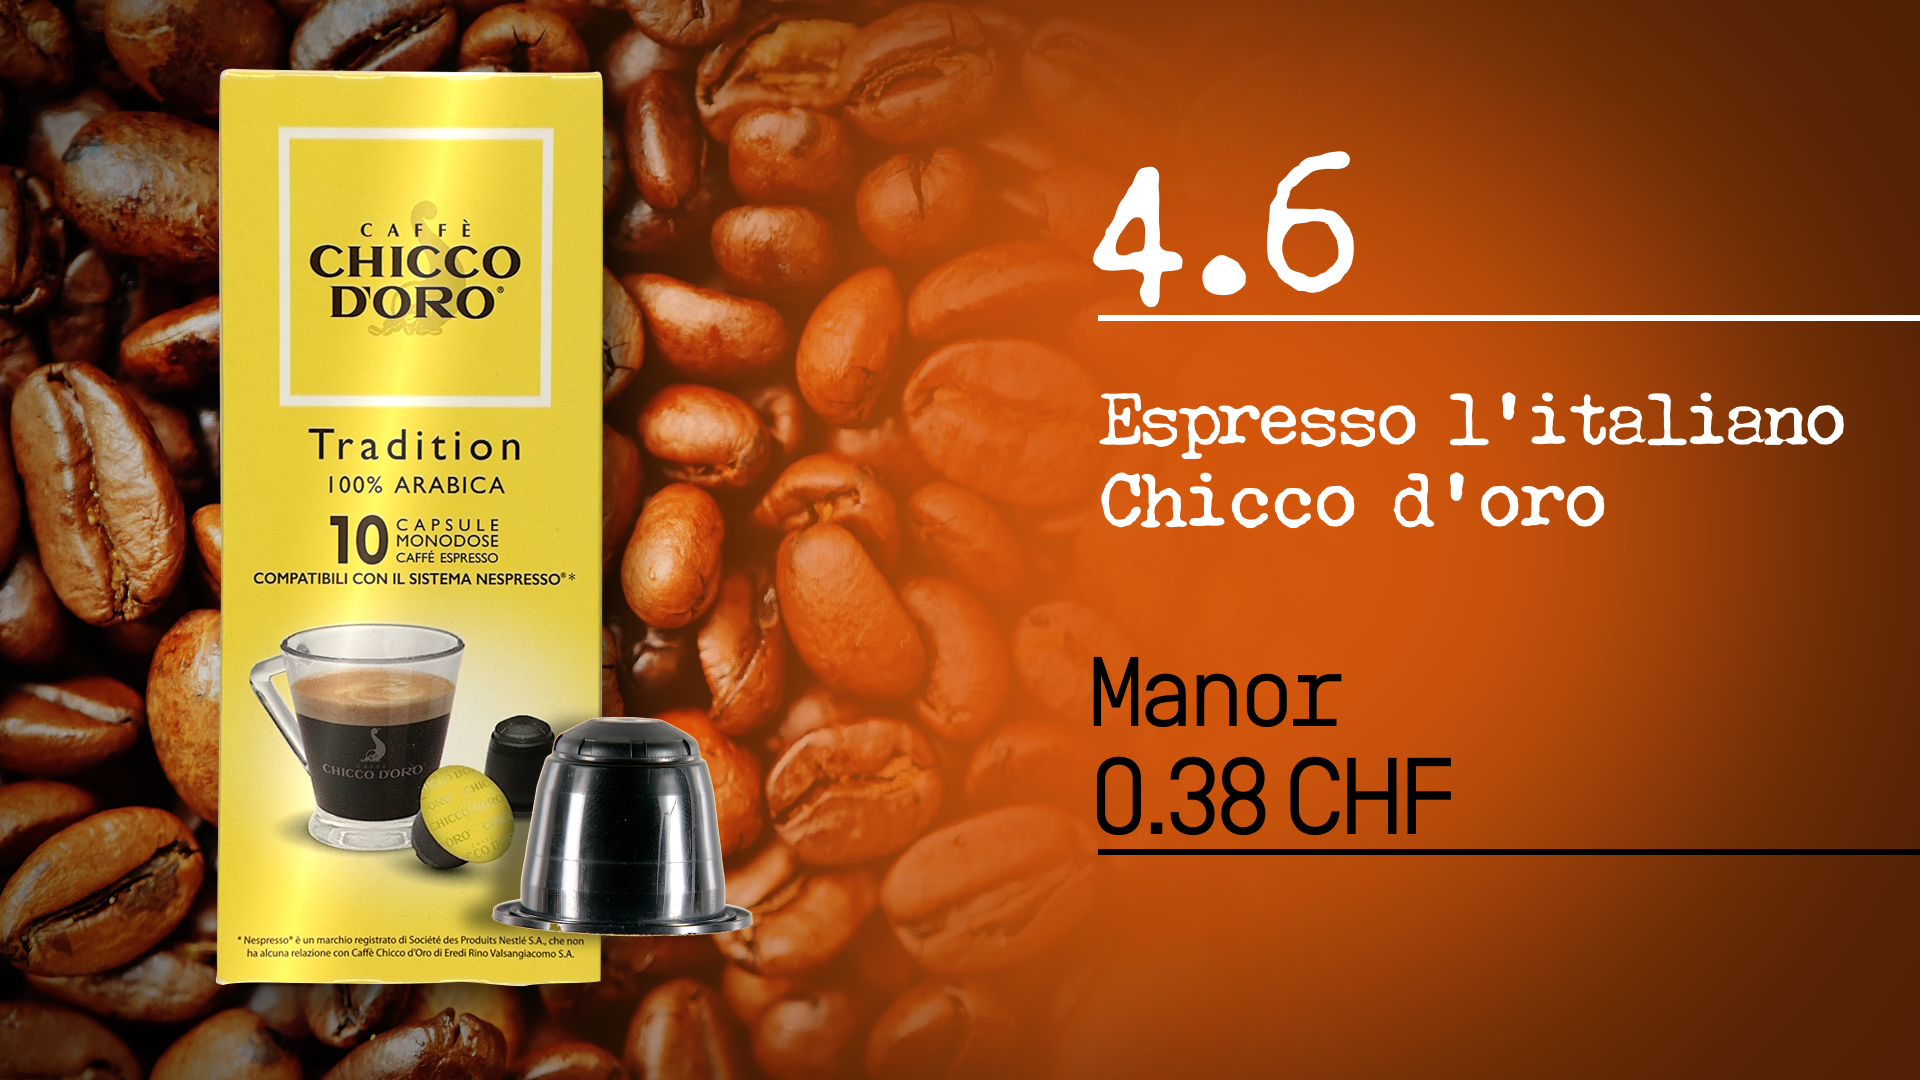 ABE test capsules 2 10 espresso chicco doro 2018 02 22 17.18.45